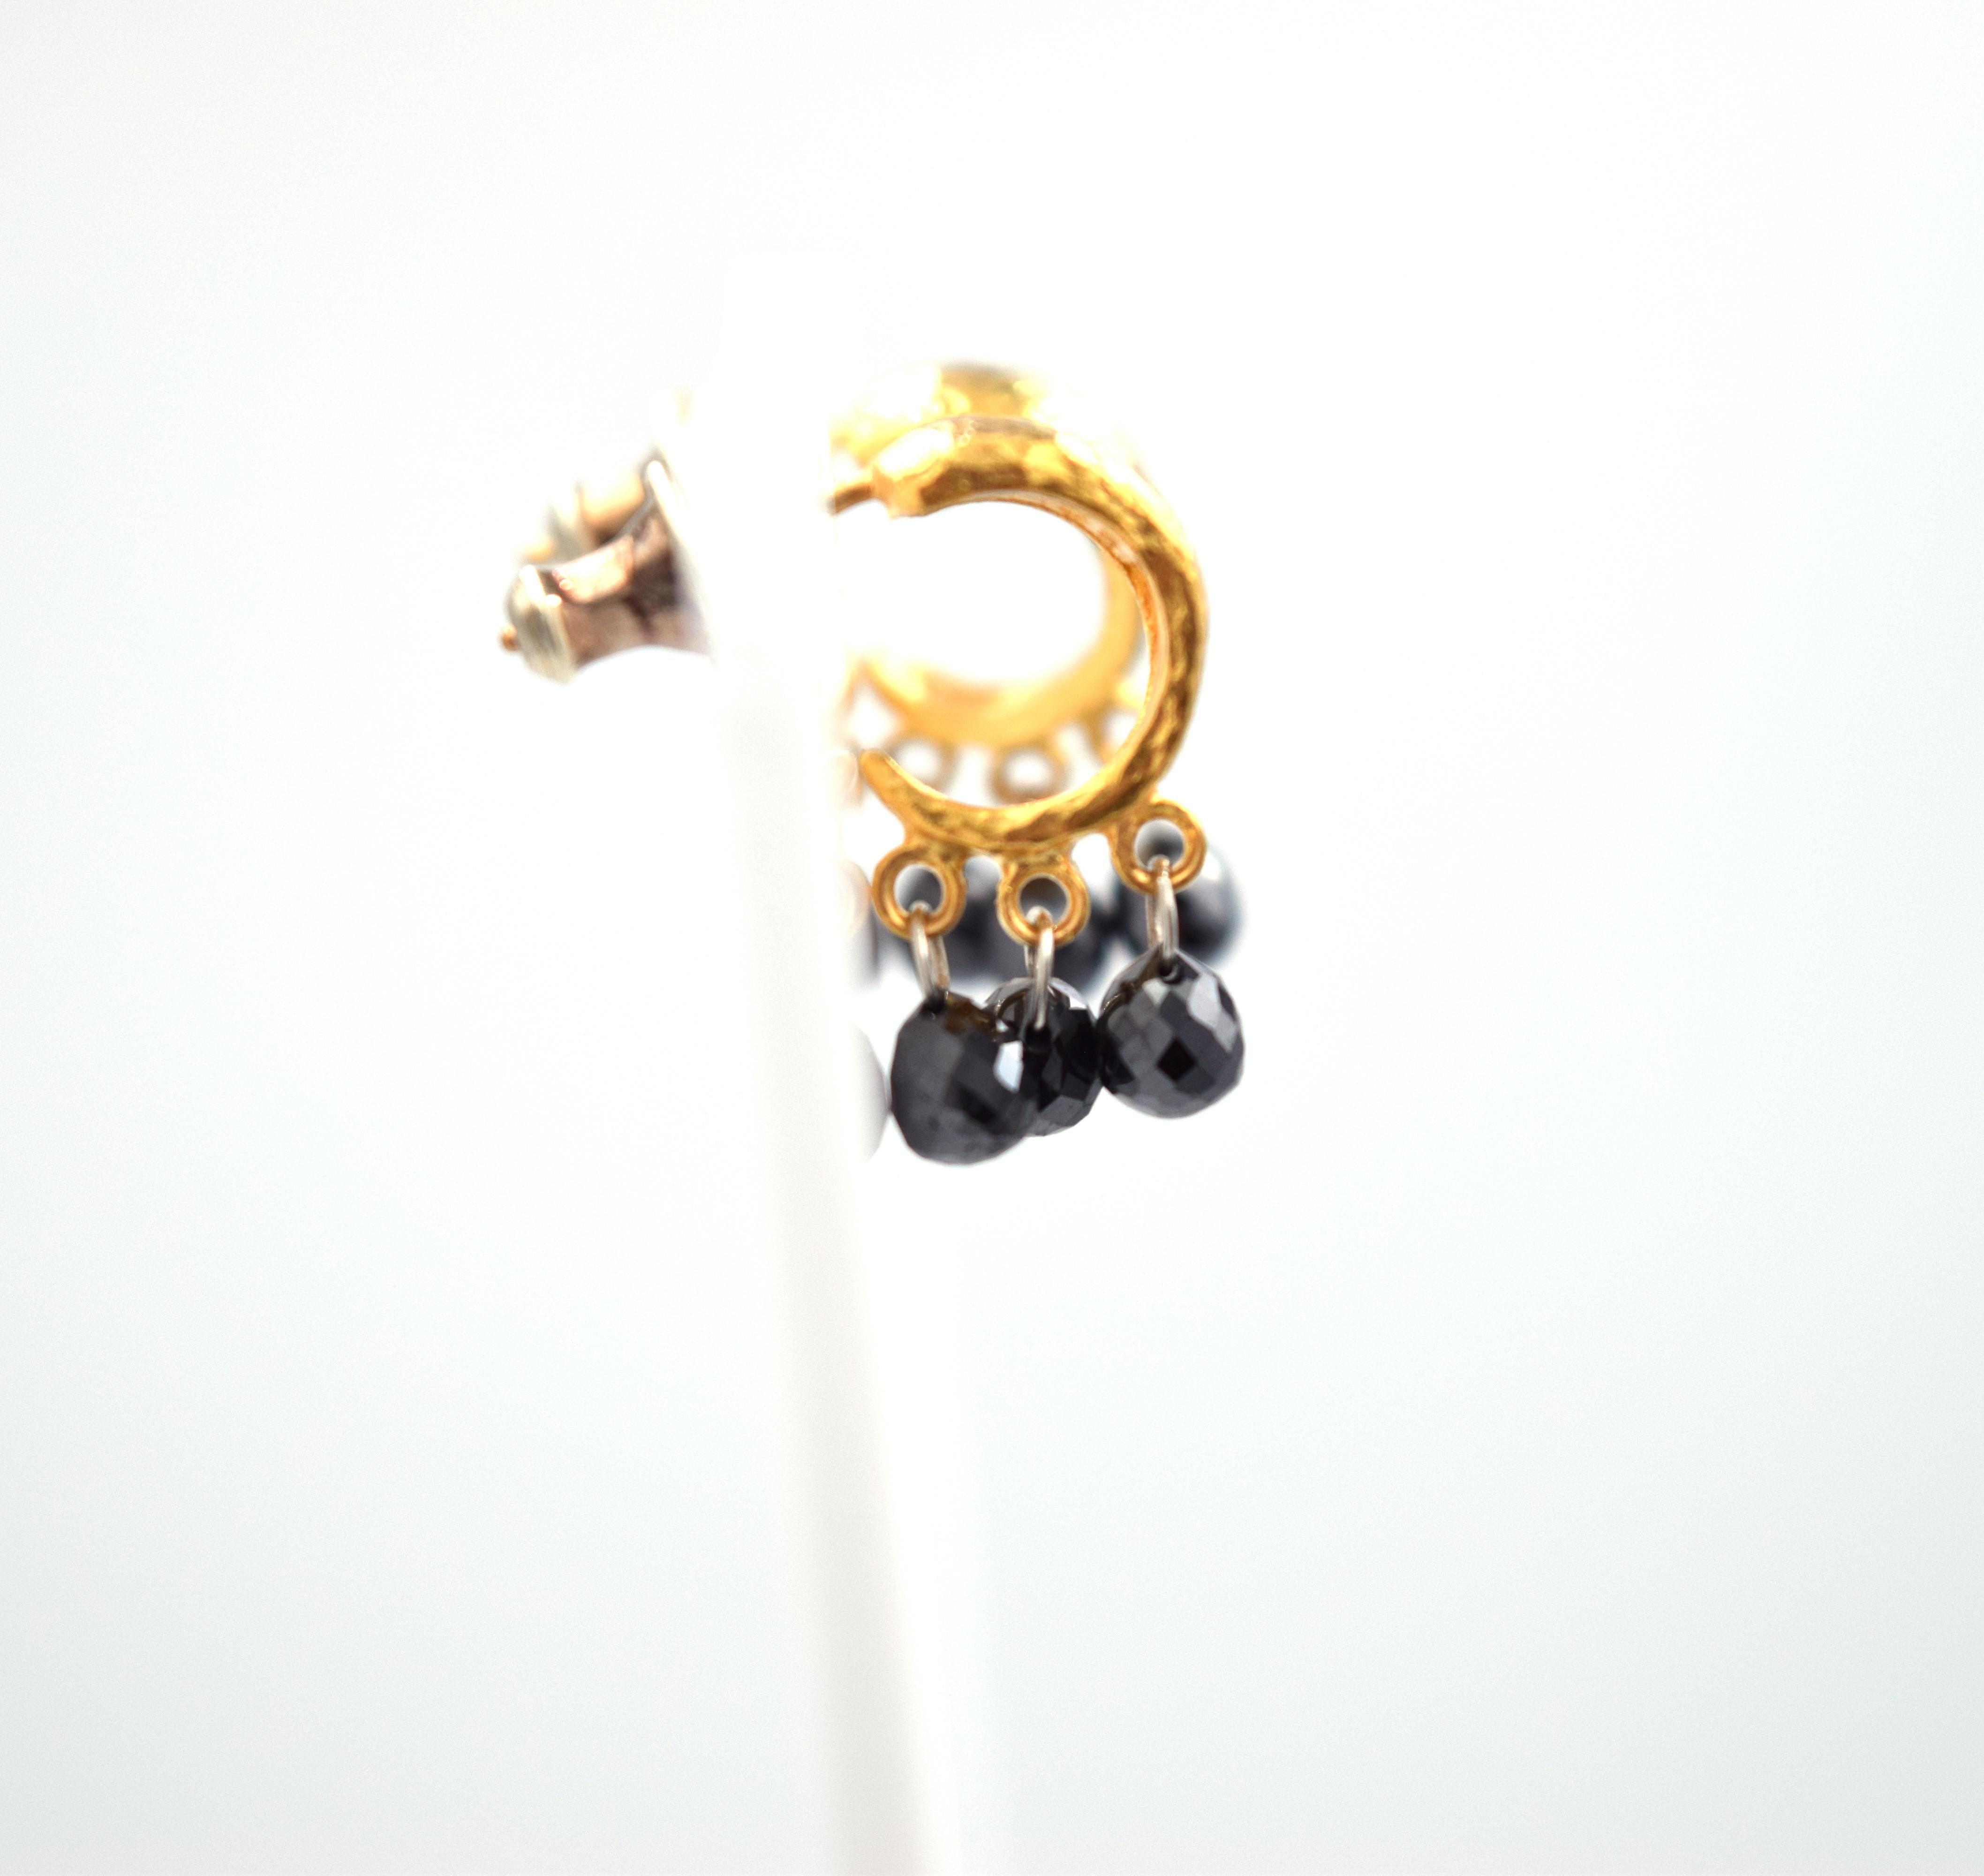 24 karat gold diamond earrings